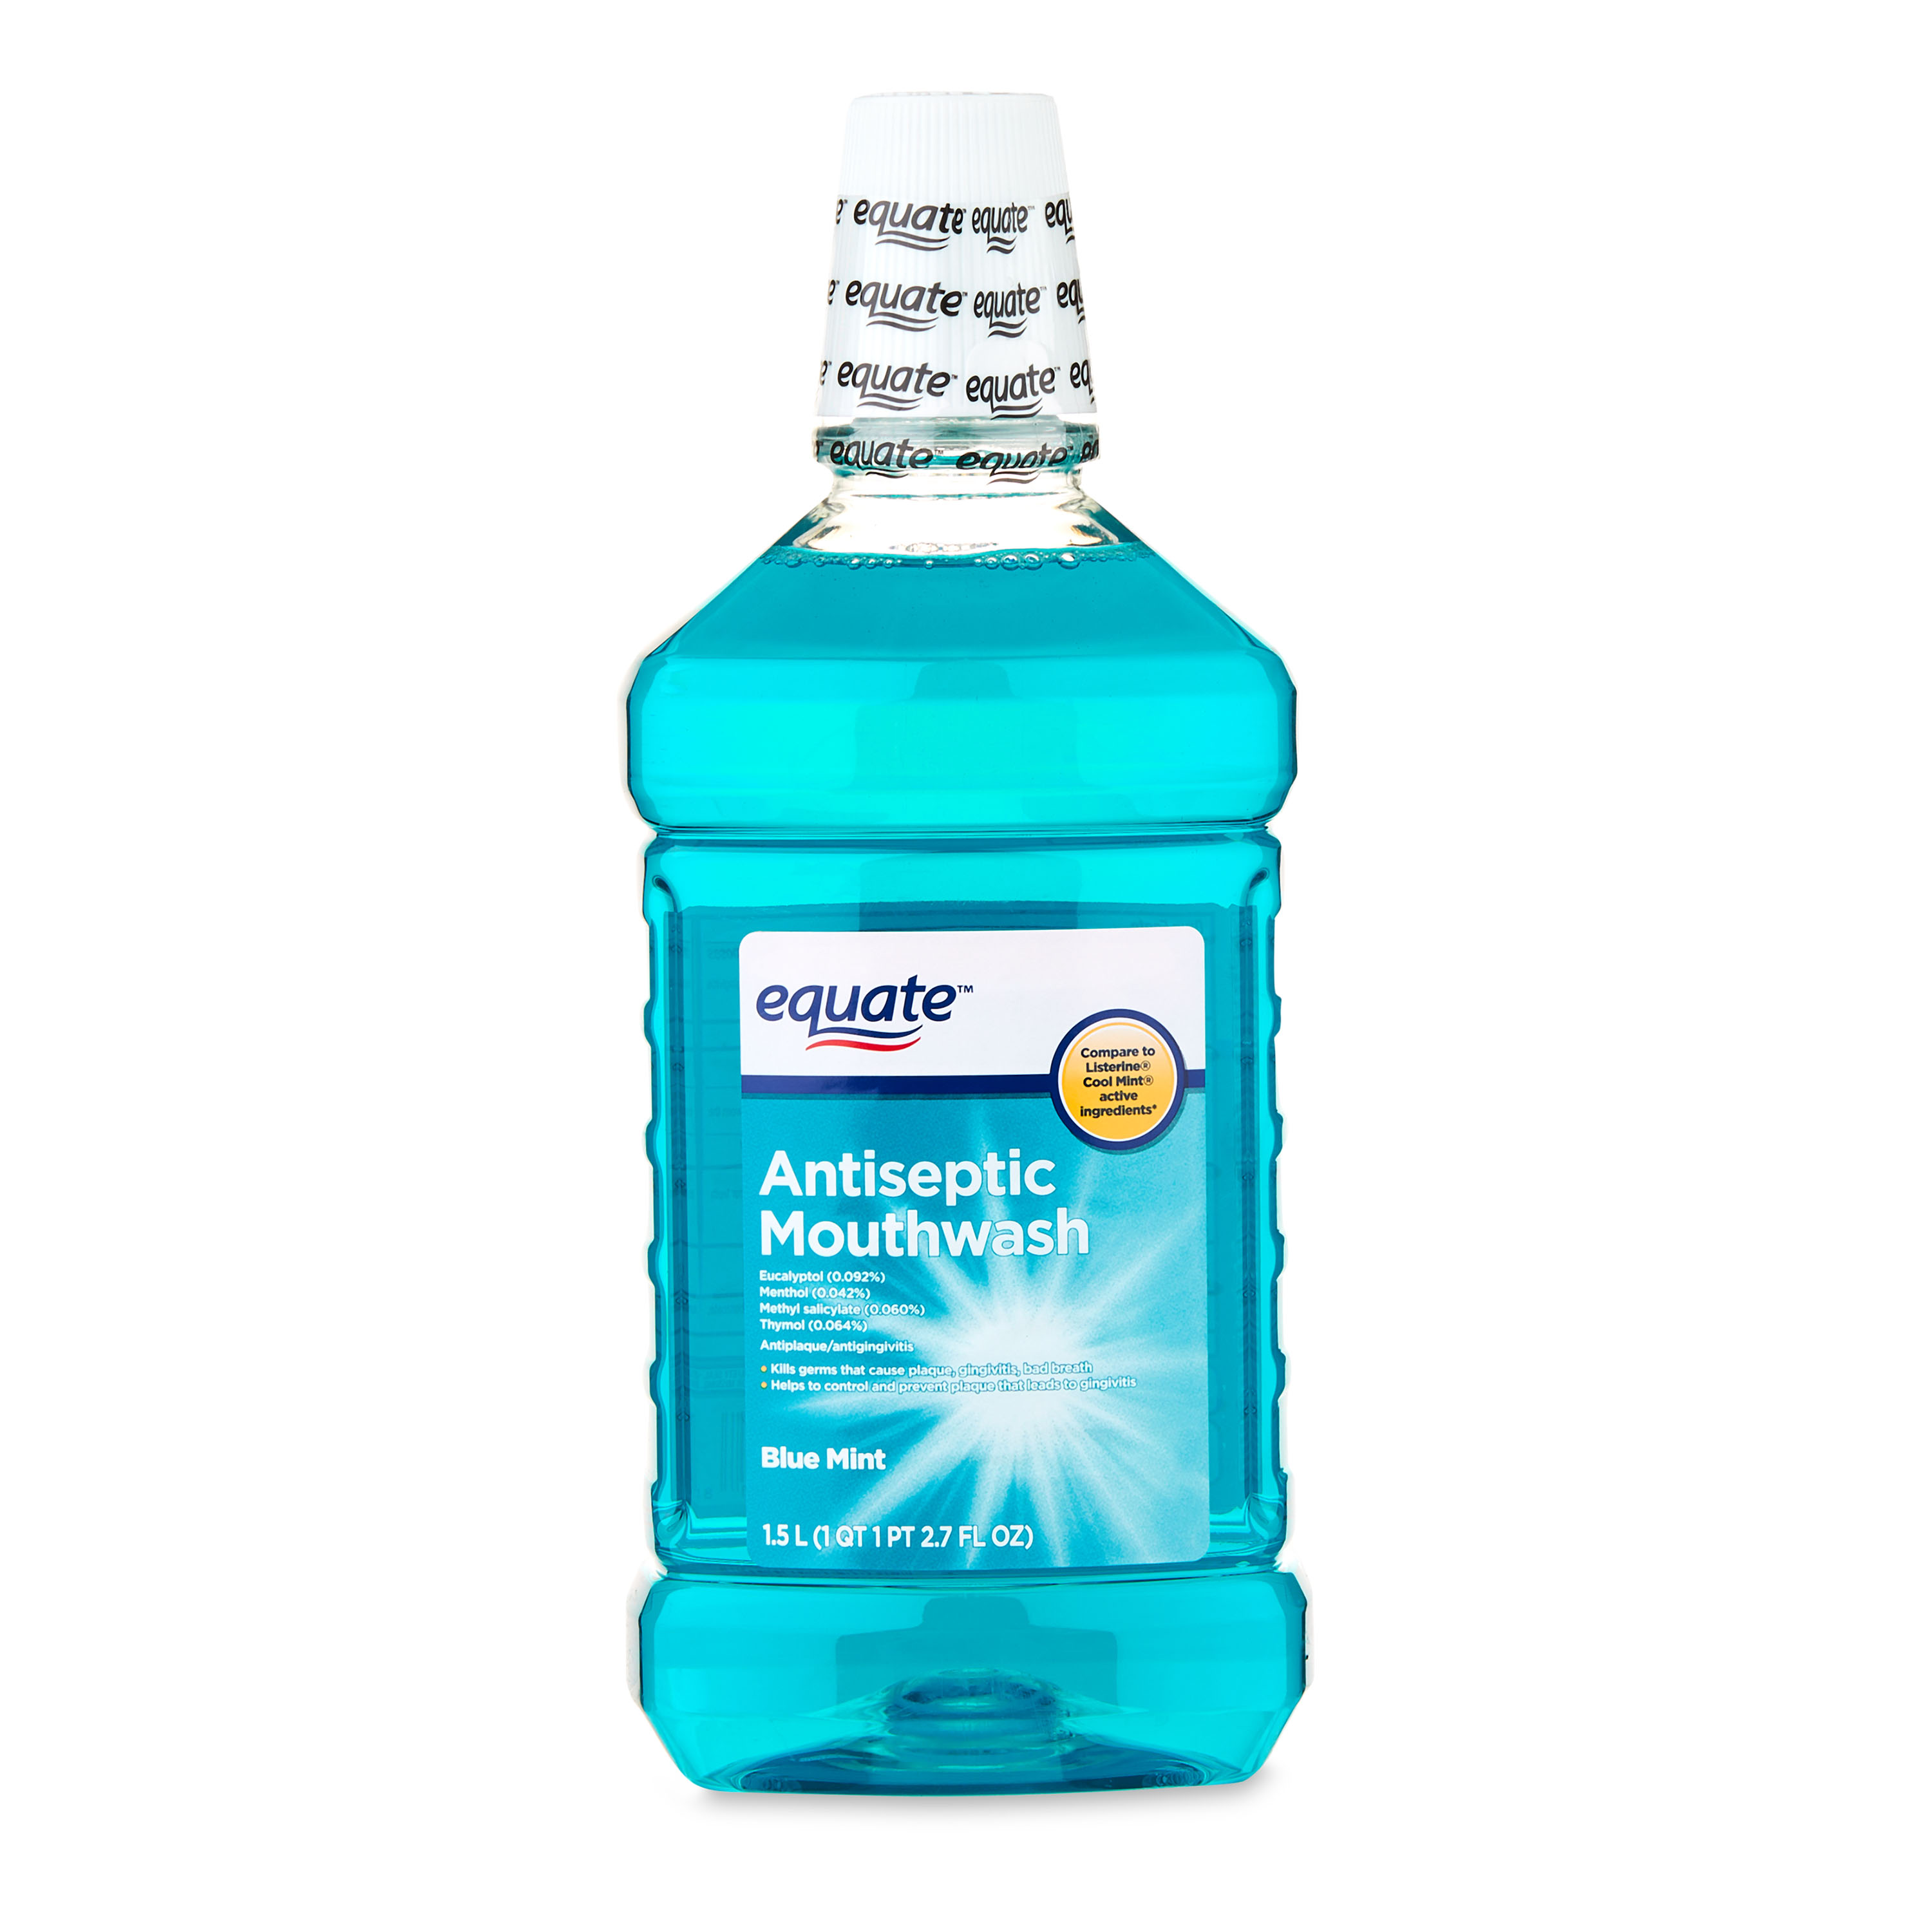 Equate Antiseptic Mouthwash, Blue Mint, 50.7 fl oz - image 1 of 7